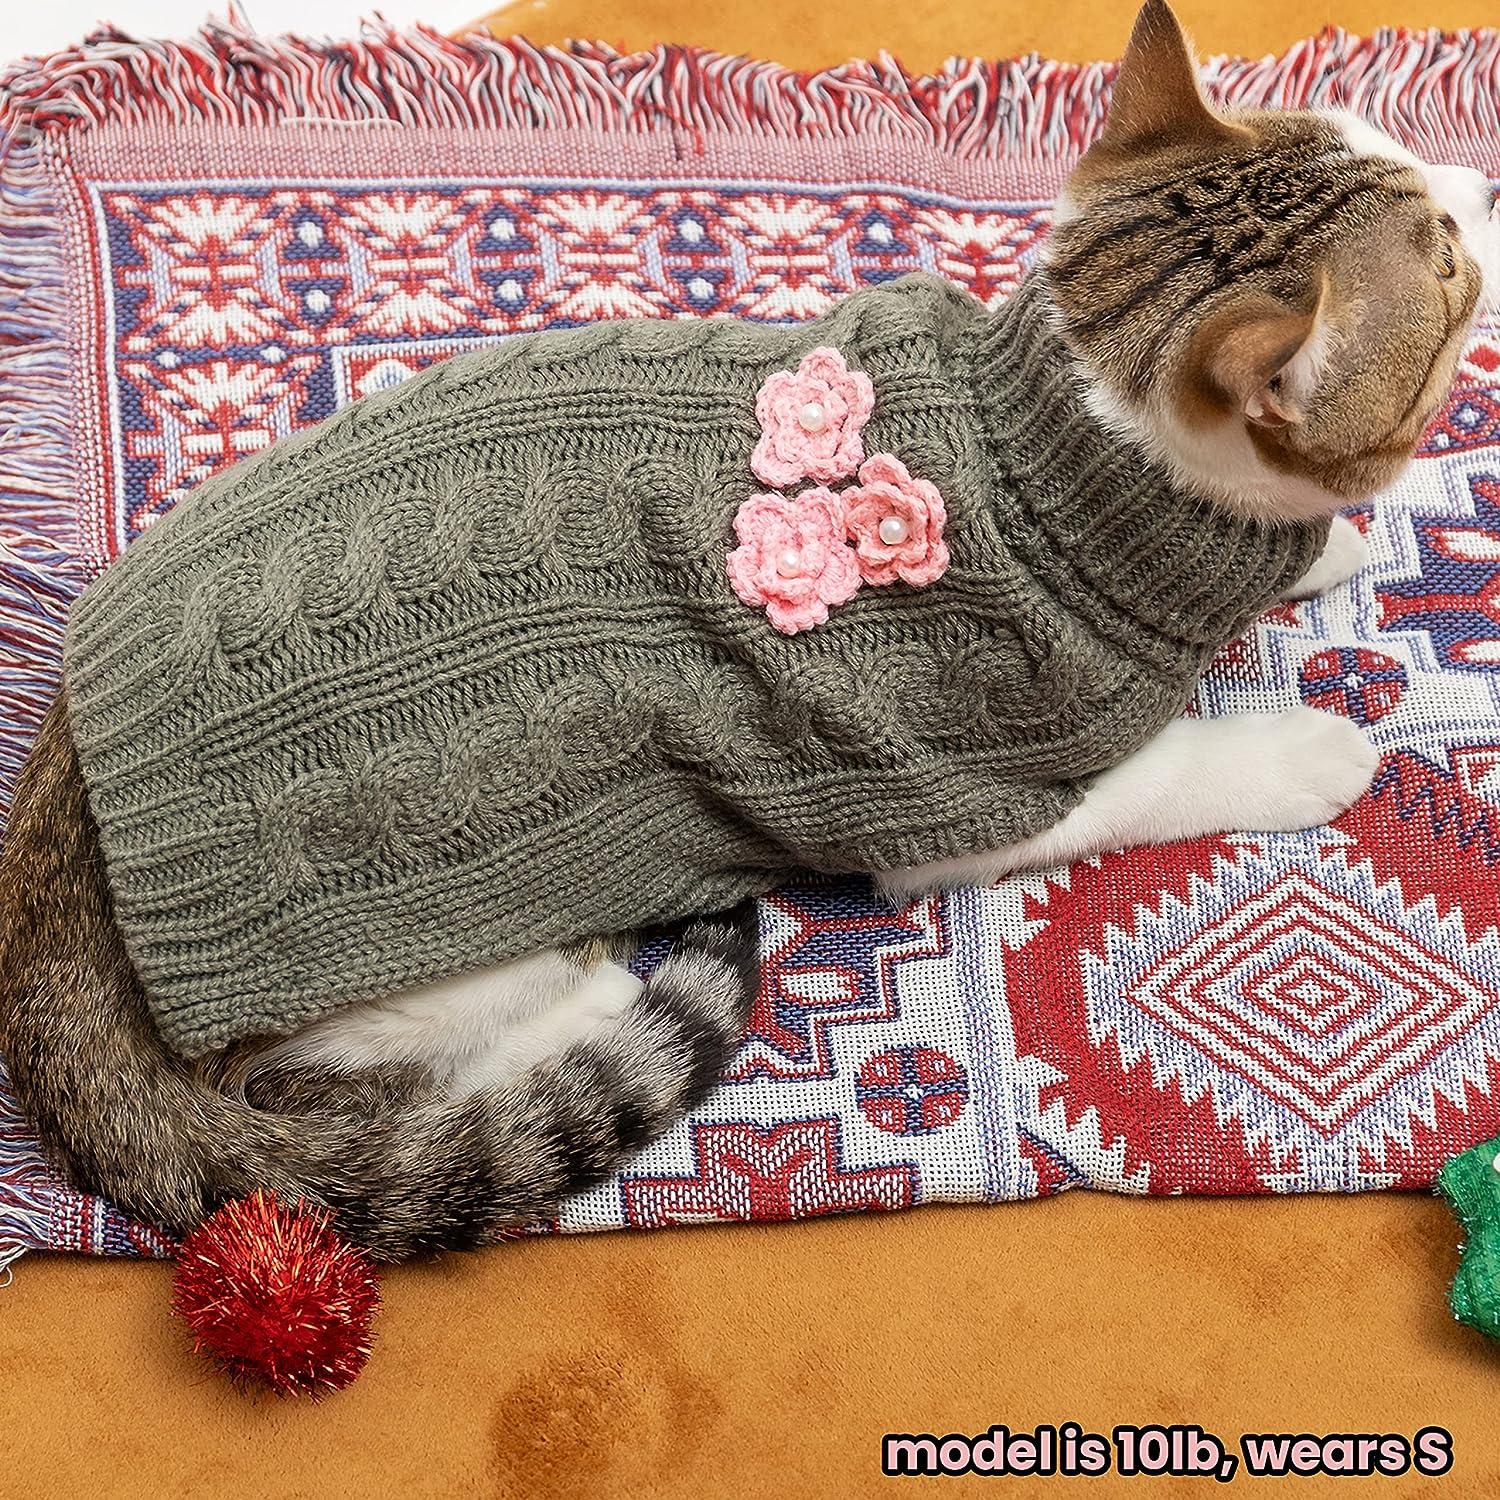 15 Dog Sweater Knitting Patterns